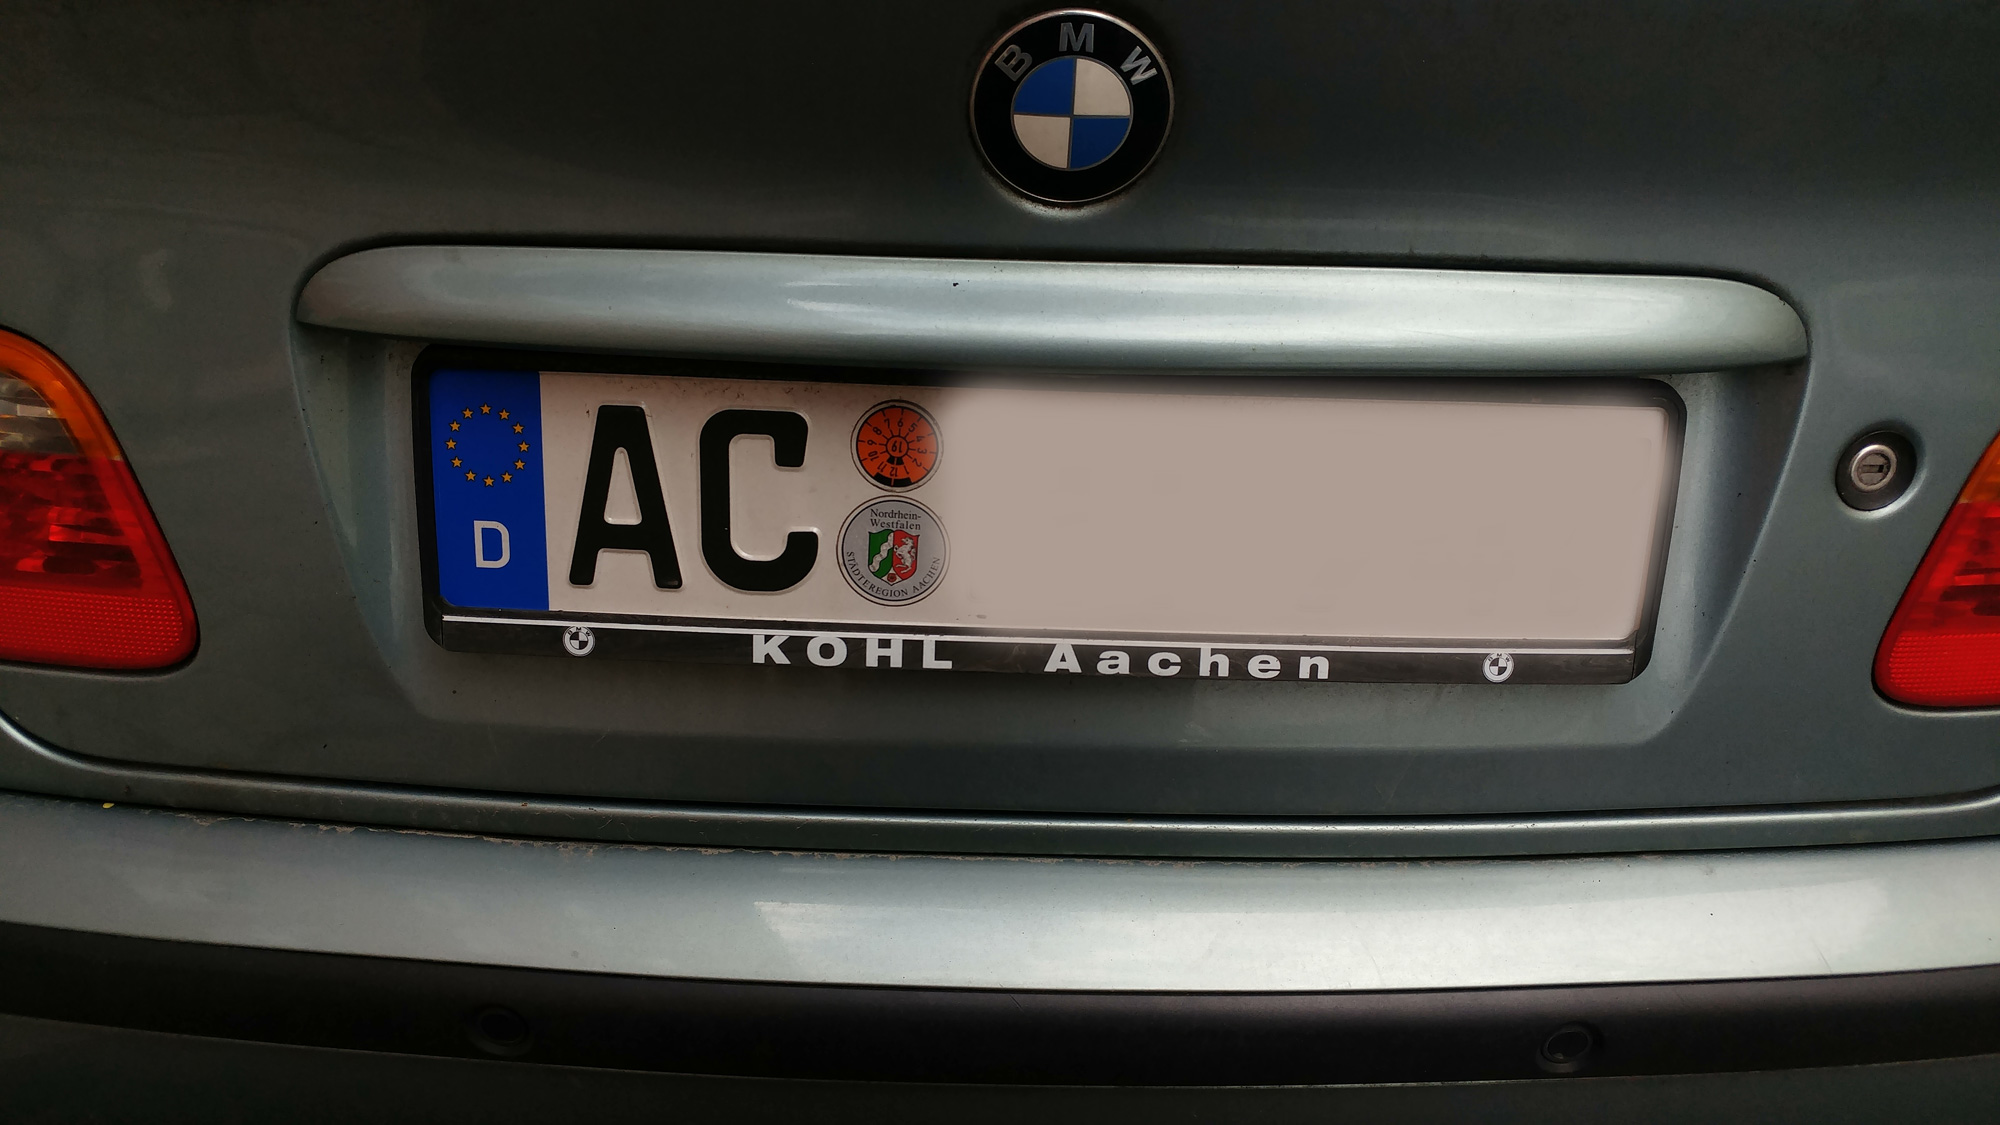 Indvending TVstation Skrive ud AC // Wofür steht das Auto-Kennzeichen AC? - Autokennzeichen Info